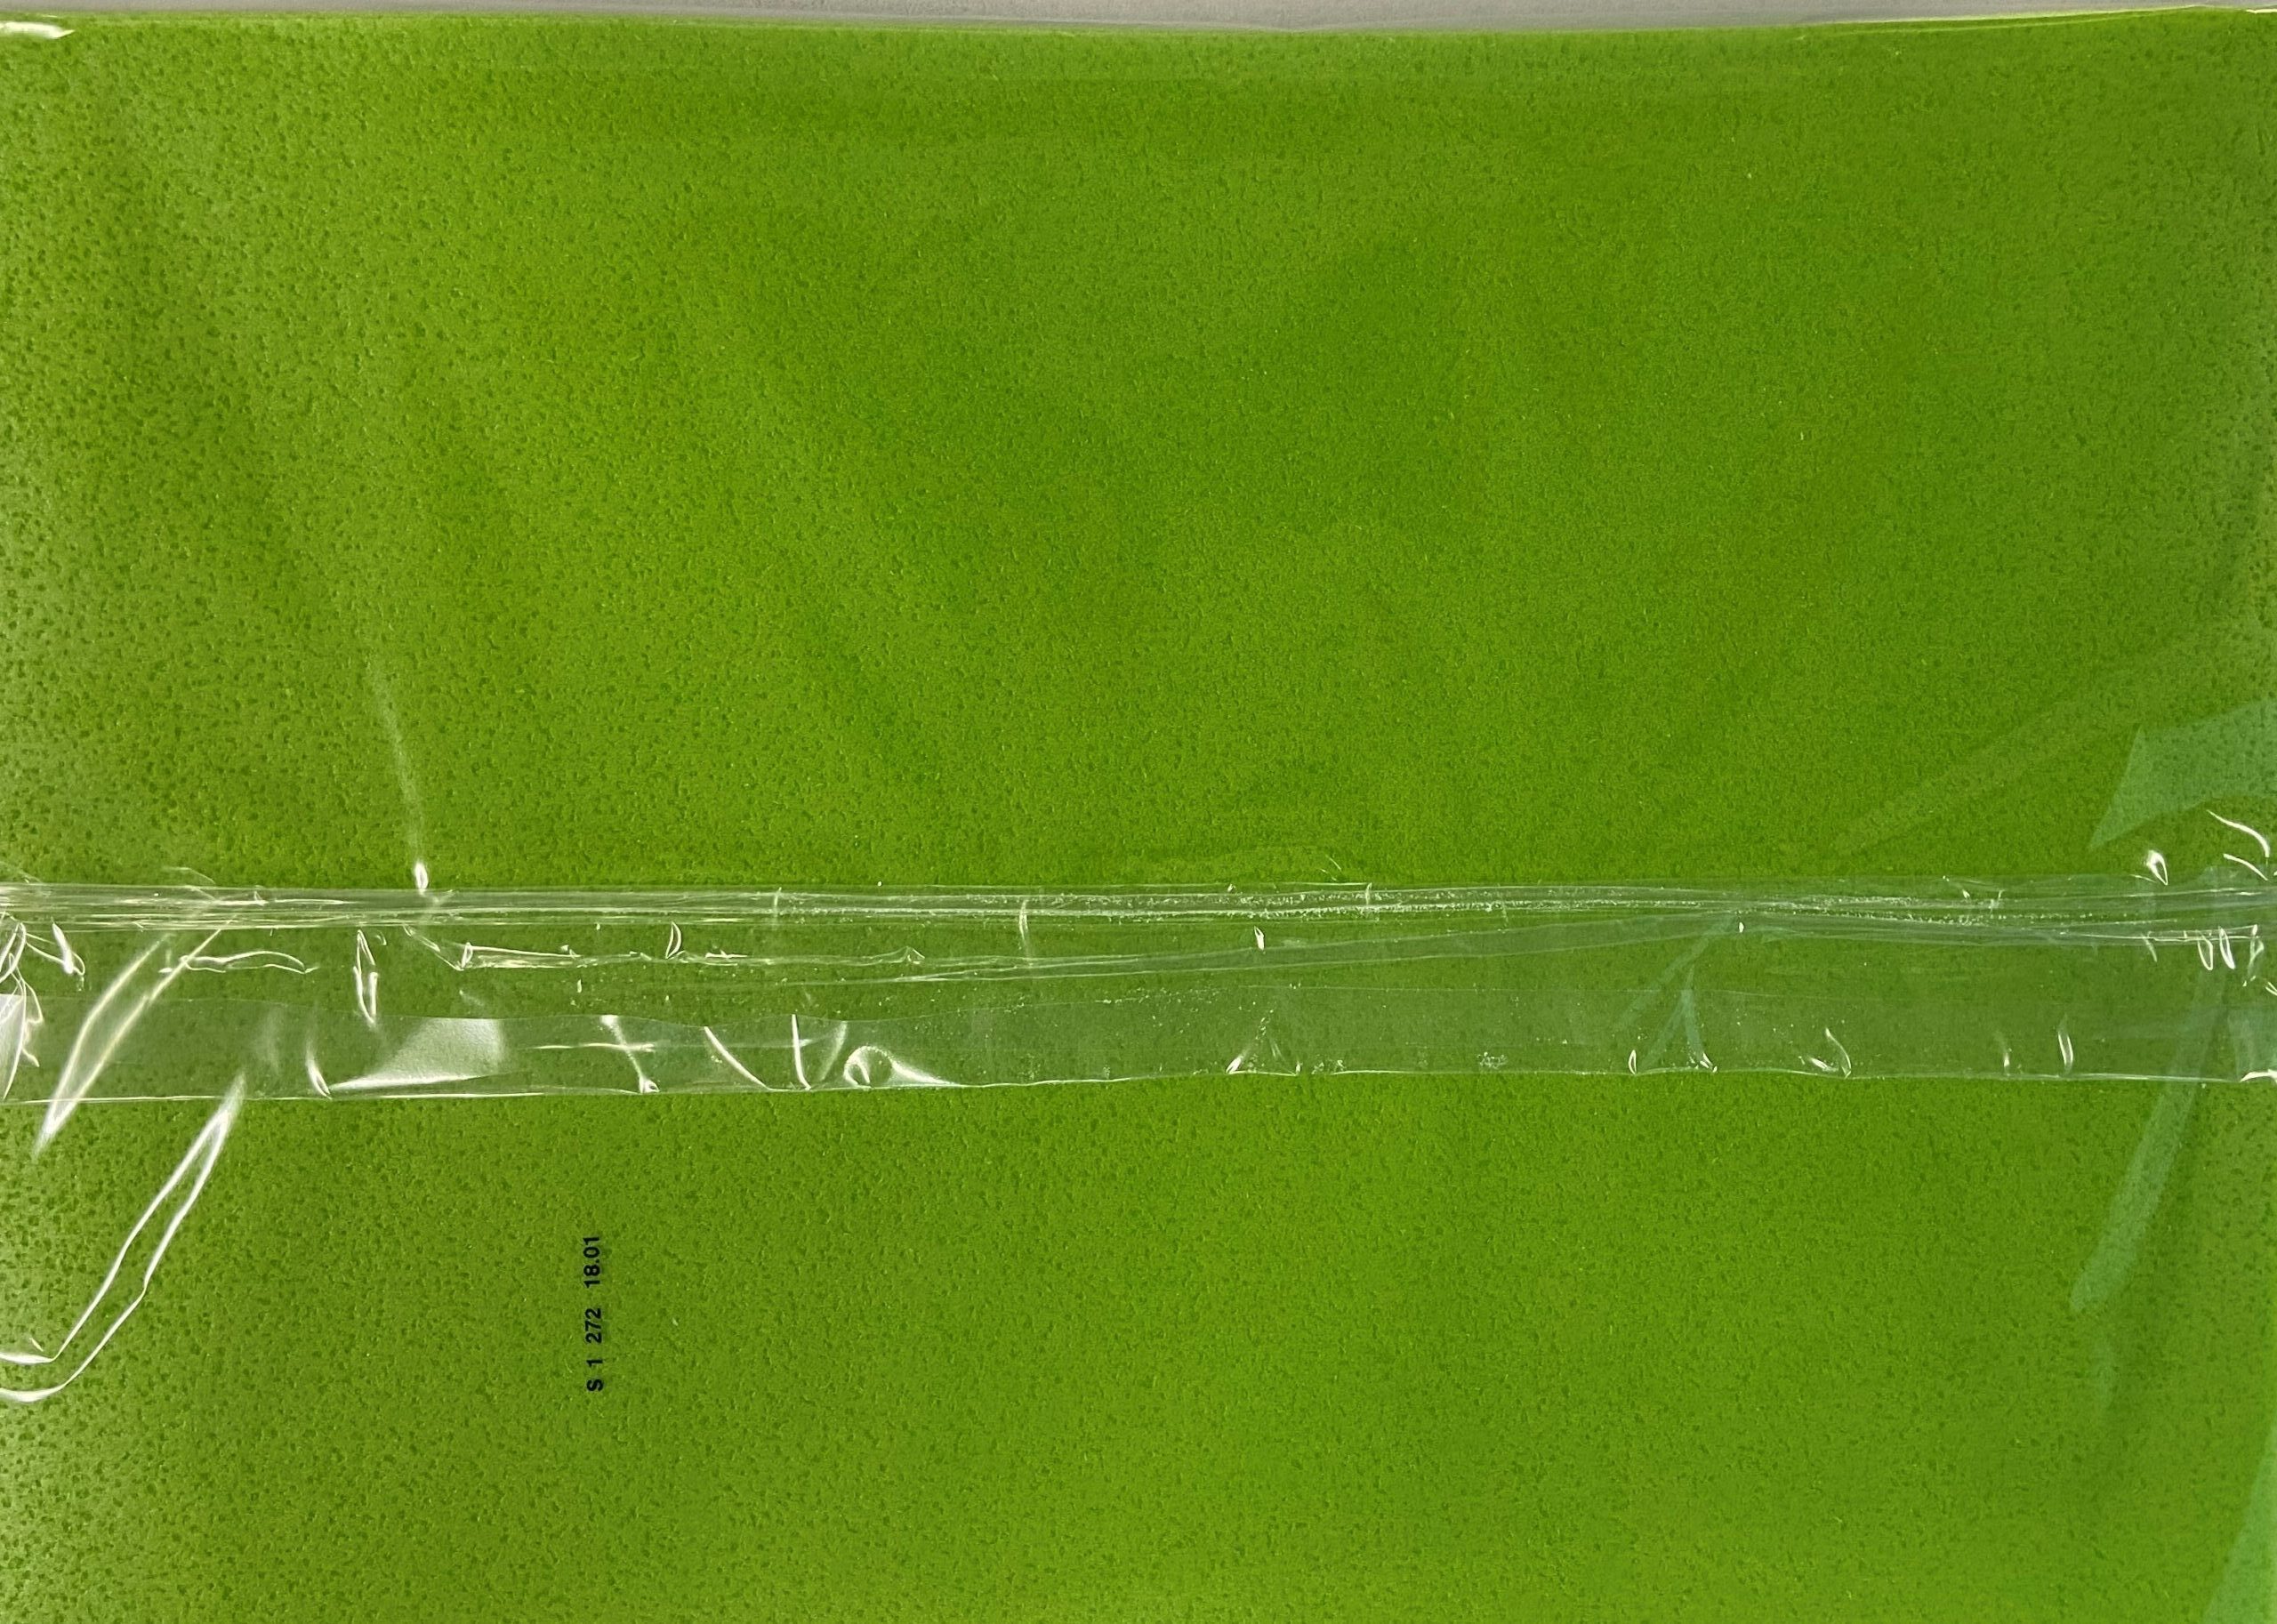 Papier Wafer - Wafer Paper - 10 feuilles